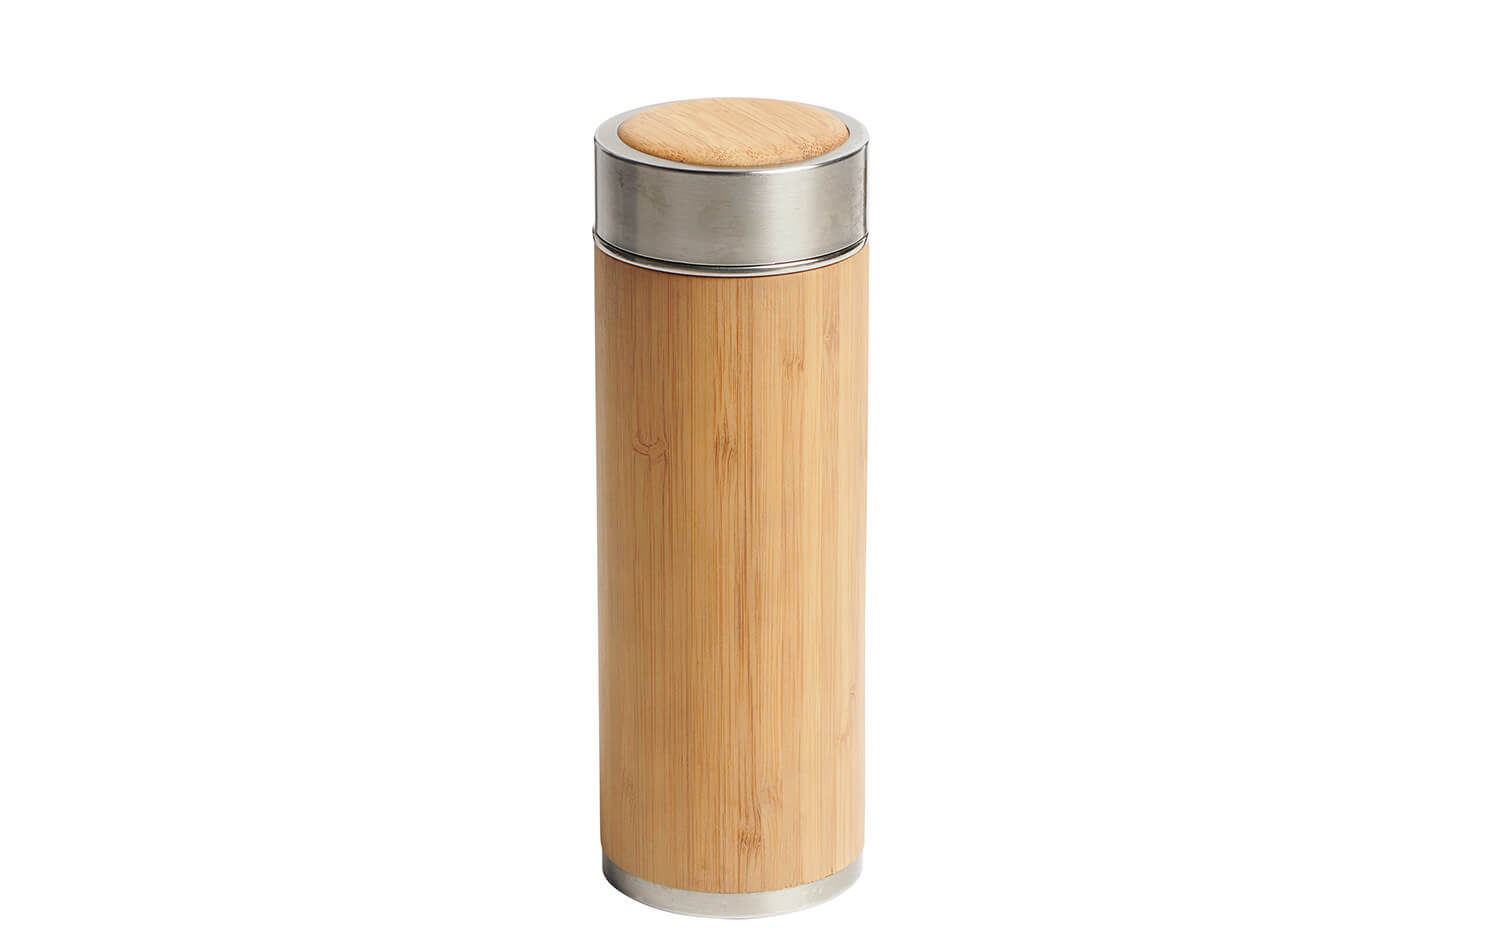 〈Bamboo Revolution〉の竹製ボトル